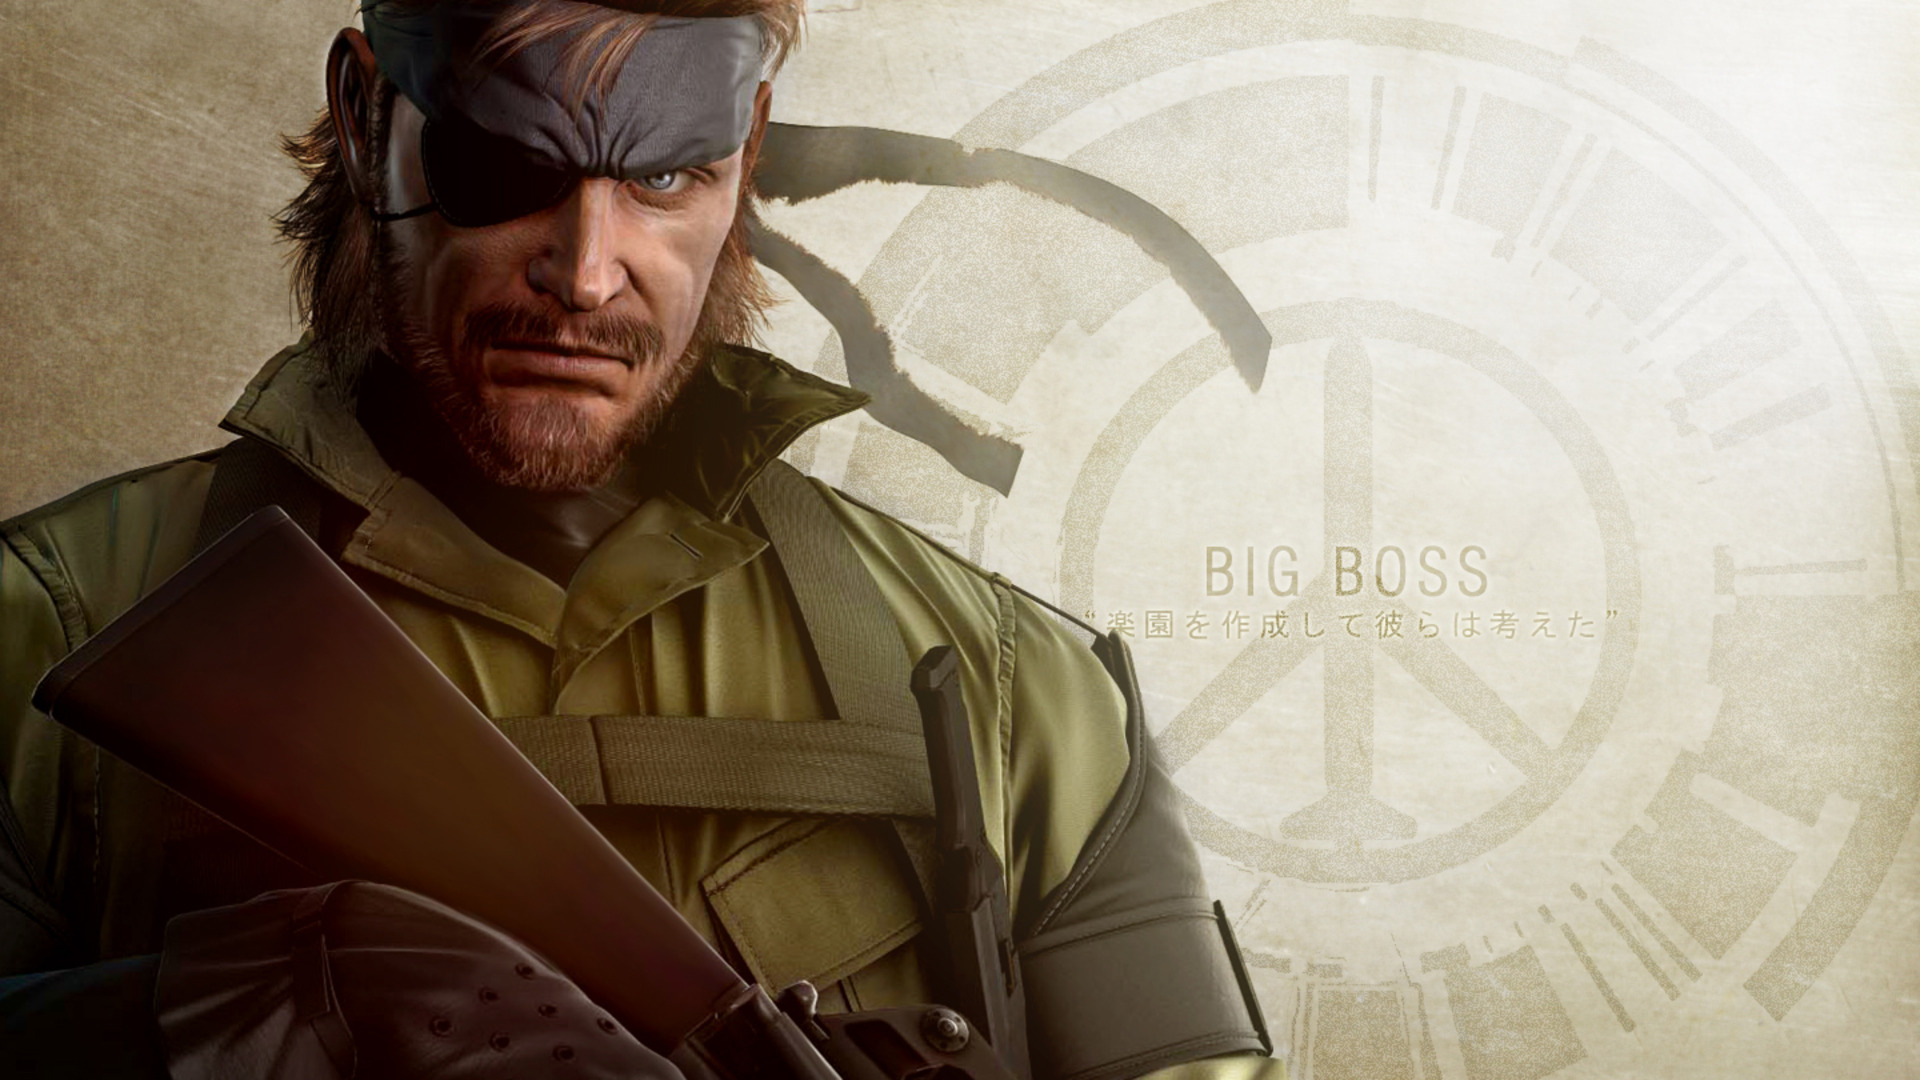 Meilleurs fonds d'écran Metal Gear Solid: Peace Walker pour l'écran du téléphone